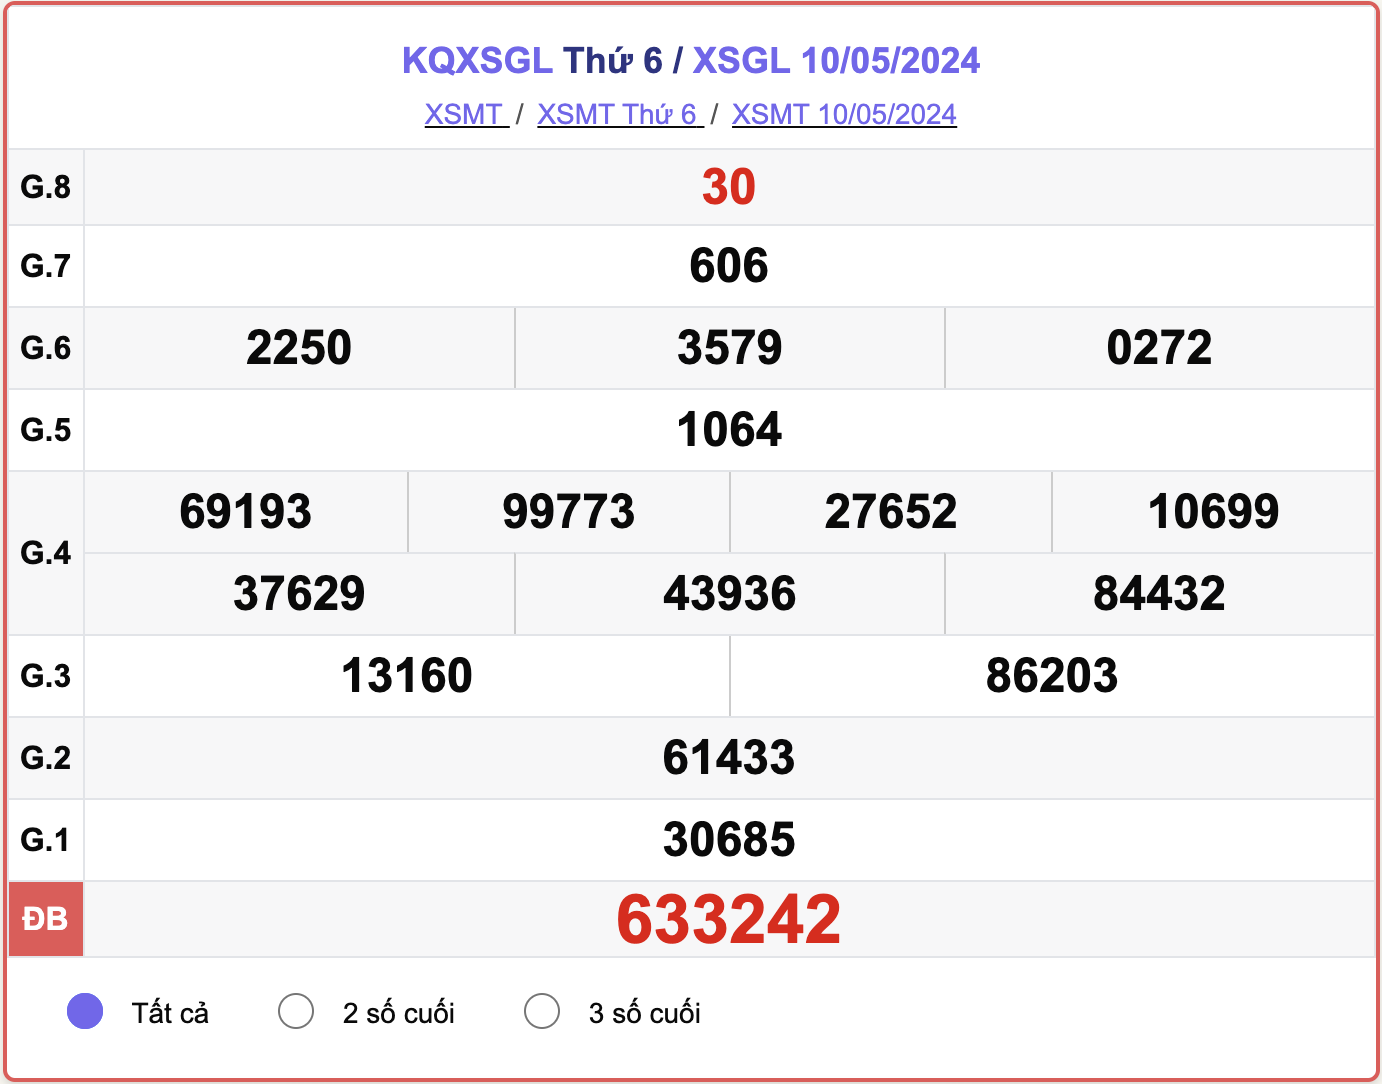 XSGL 10/5, kết quả xổ số Gia Lai hôm nay 10/5/2024.